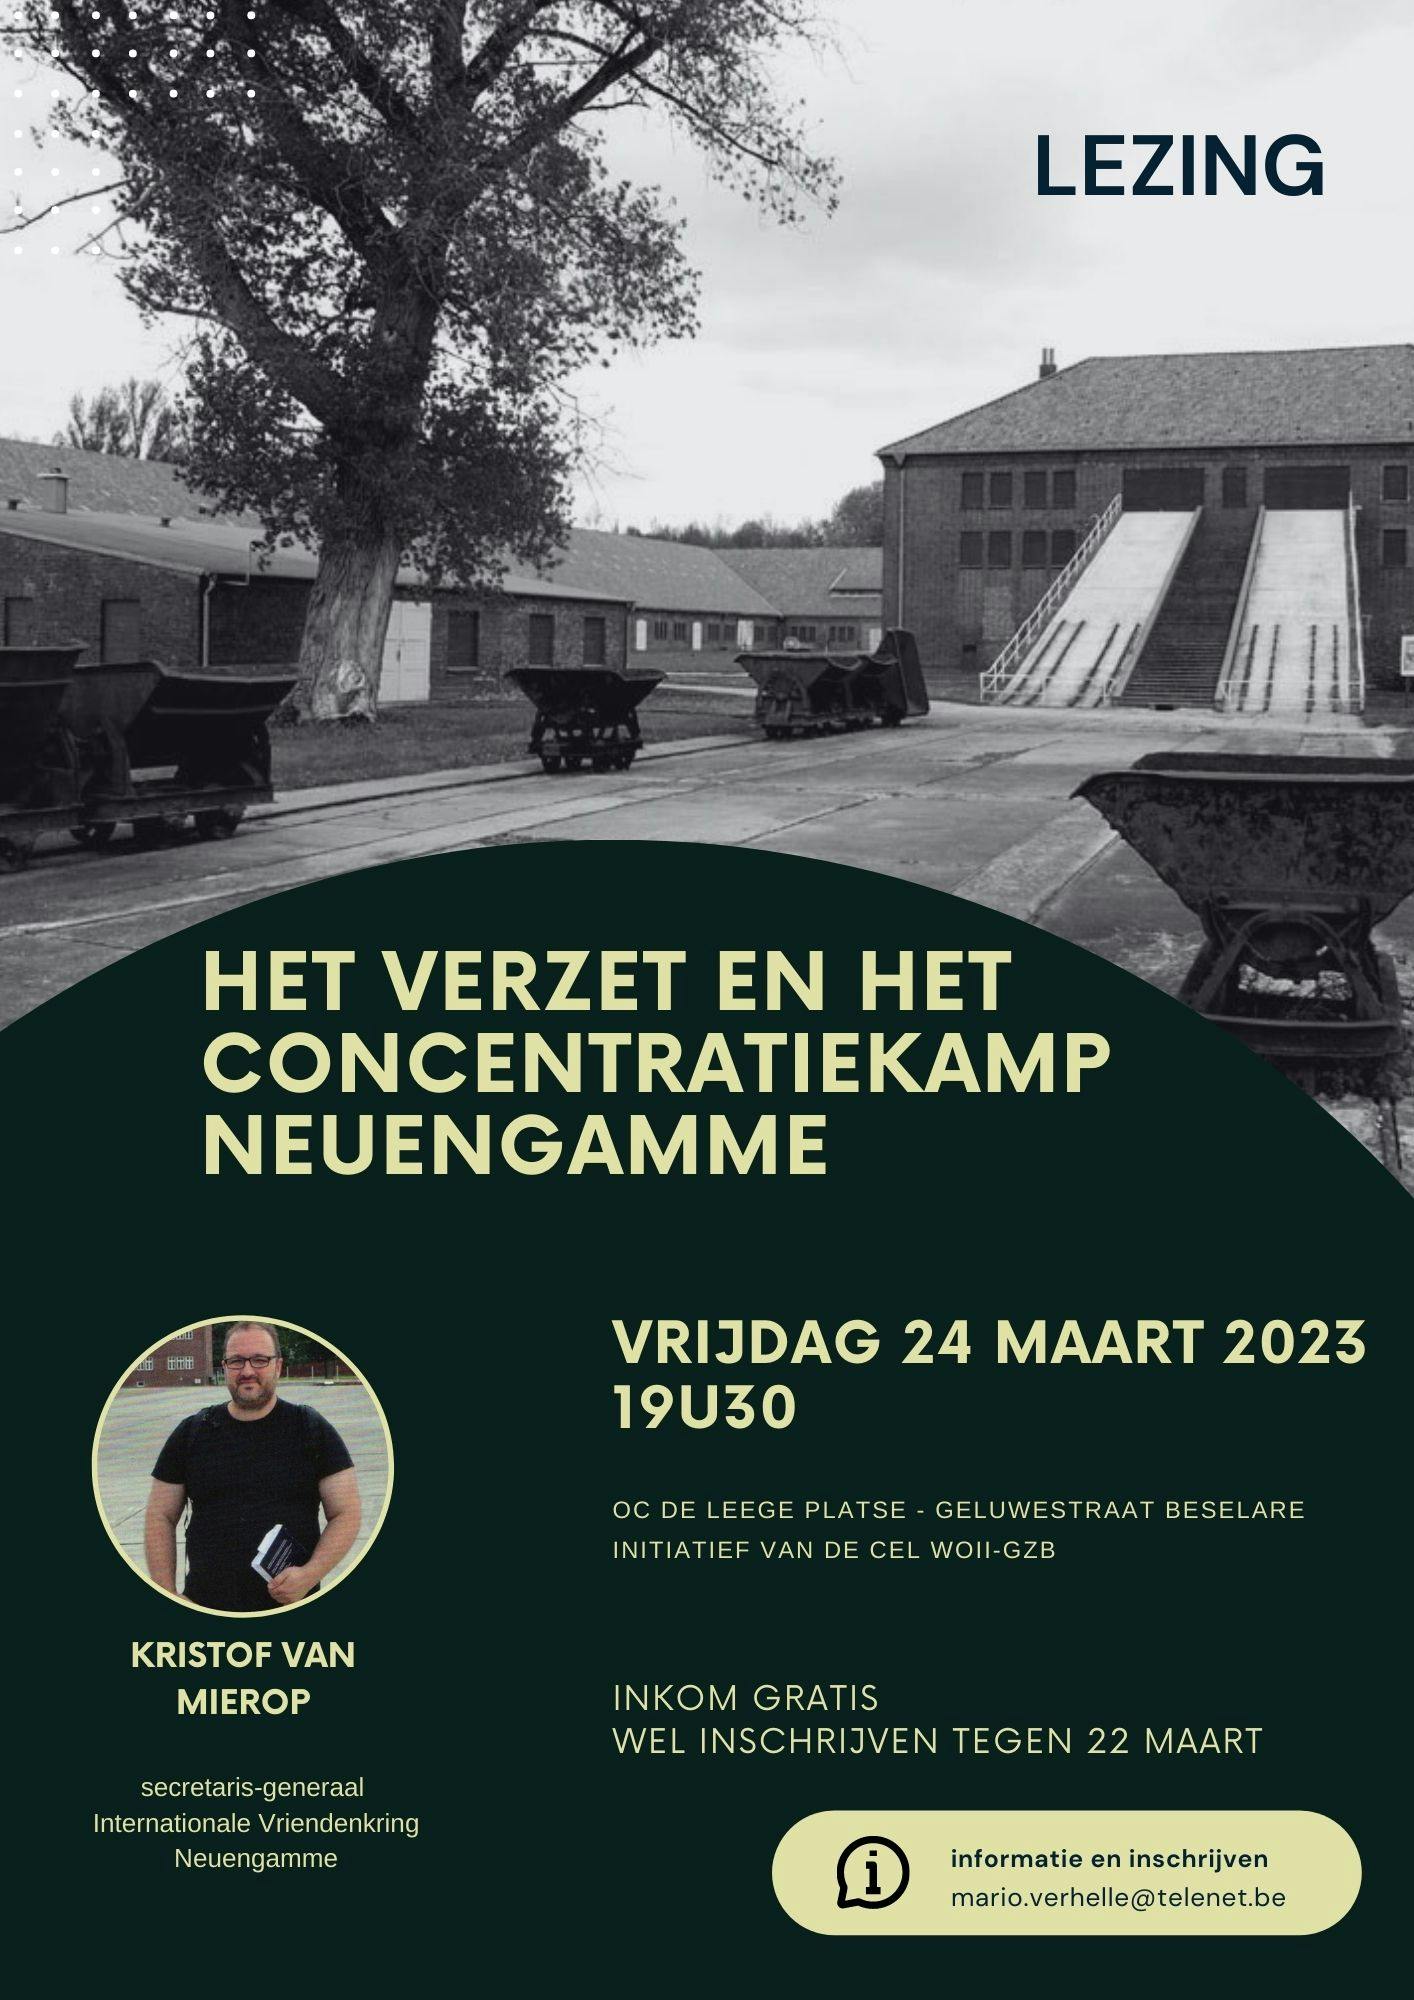 Het verzet en het concentratiekamp Neuengamme